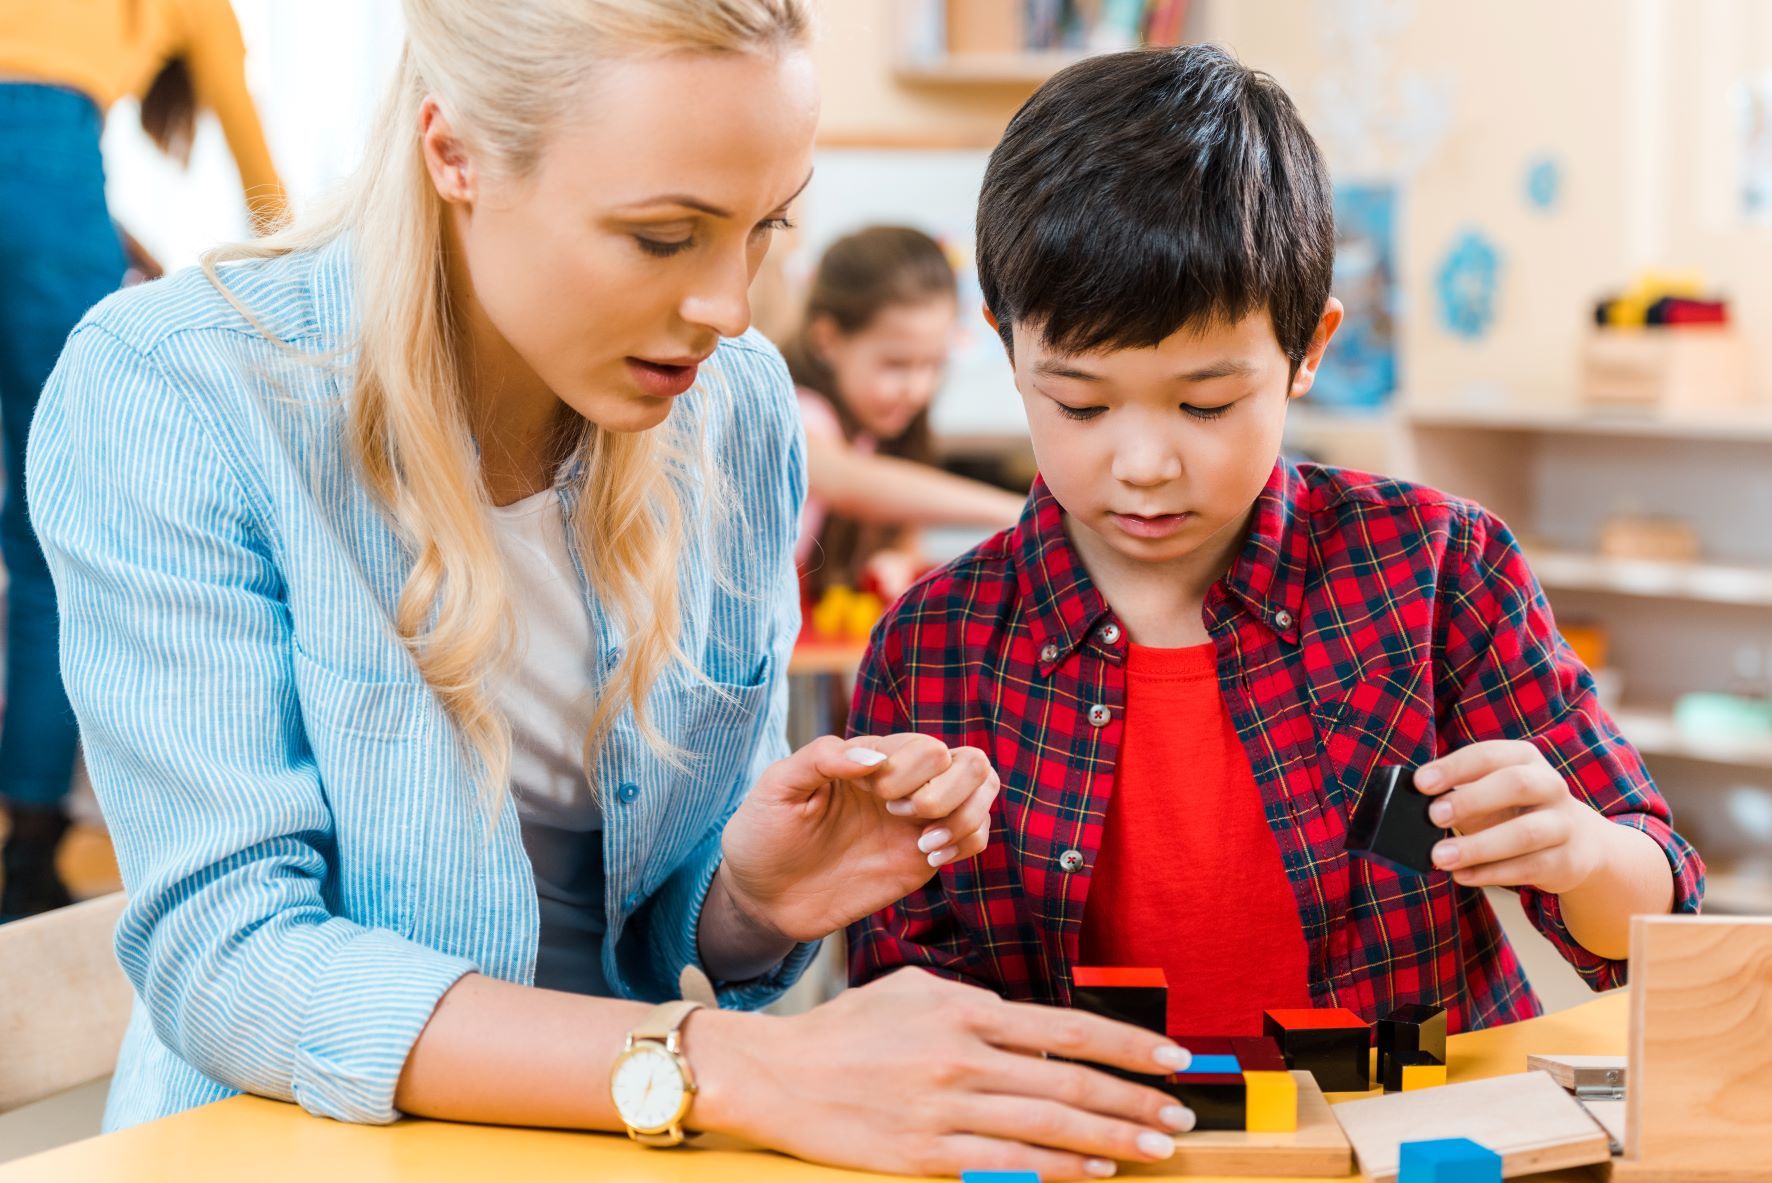 En el Método Montessori el alumno marca el ritmo y el adulto guía respetando su autonomía